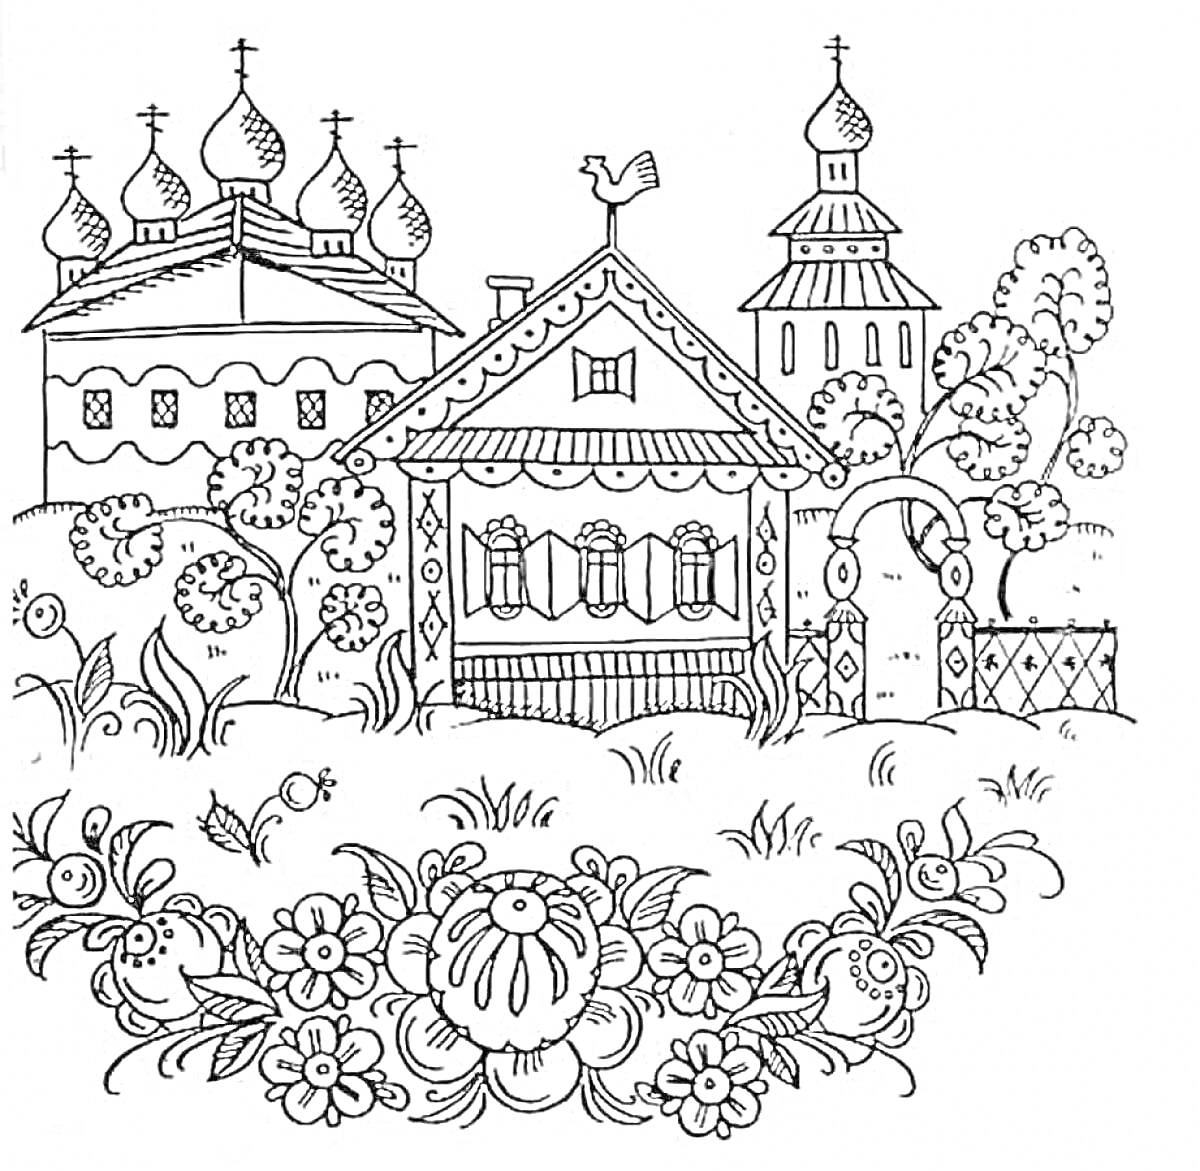 Раскраска Деревенская сцена с церквями и домом, украшенная цветочным орнаментом